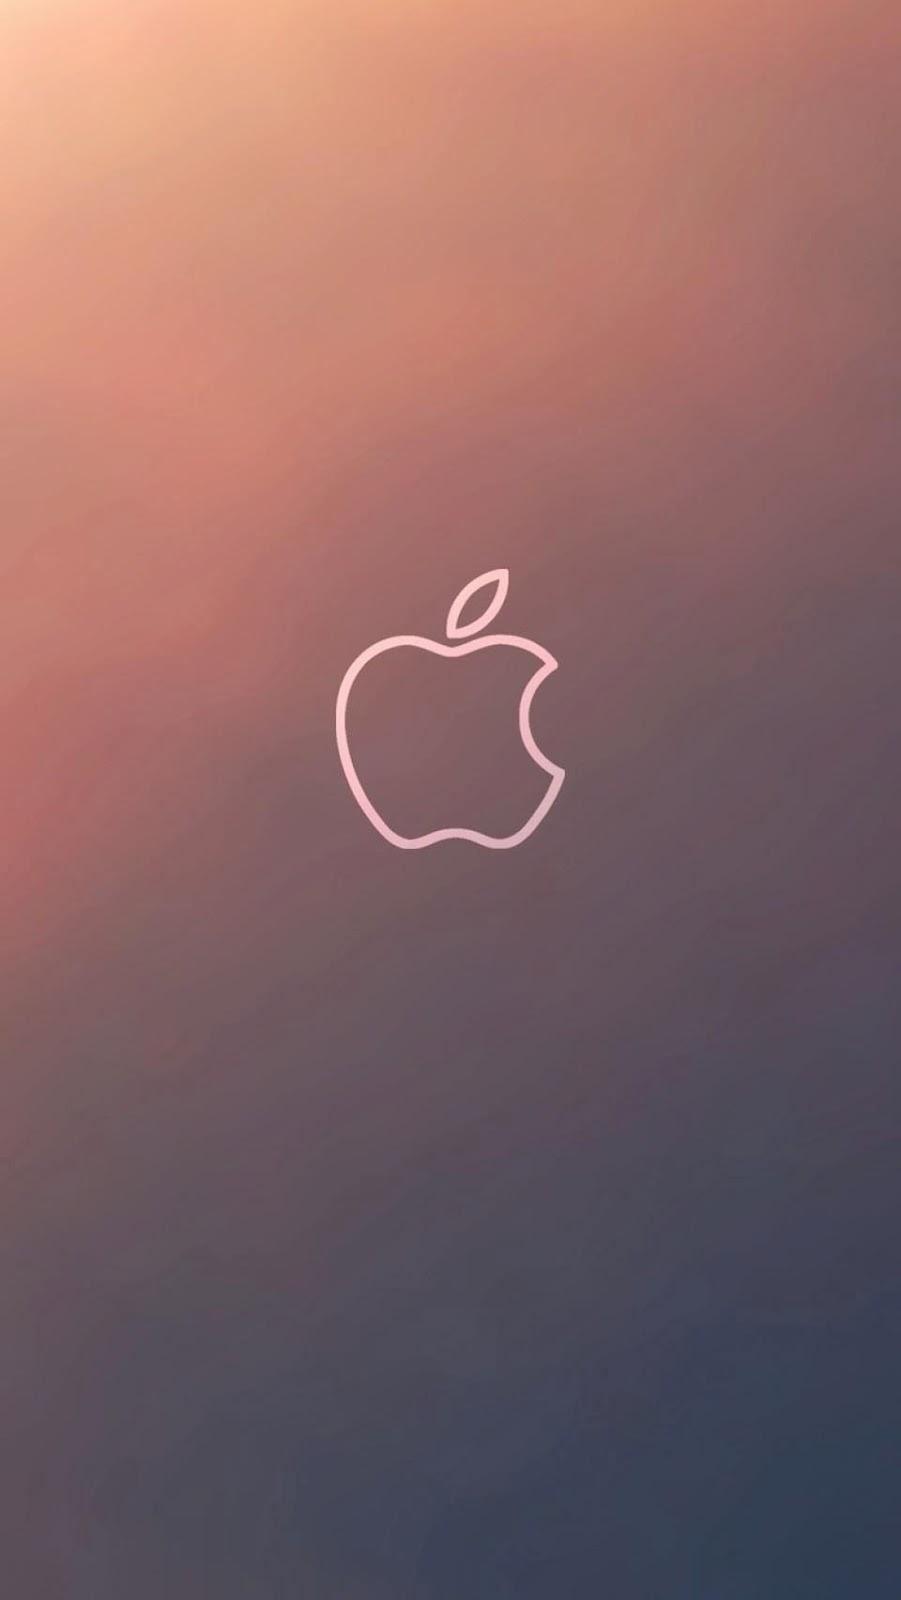 49+] Apple iPhone 6 Wallpapers - WallpaperSafari